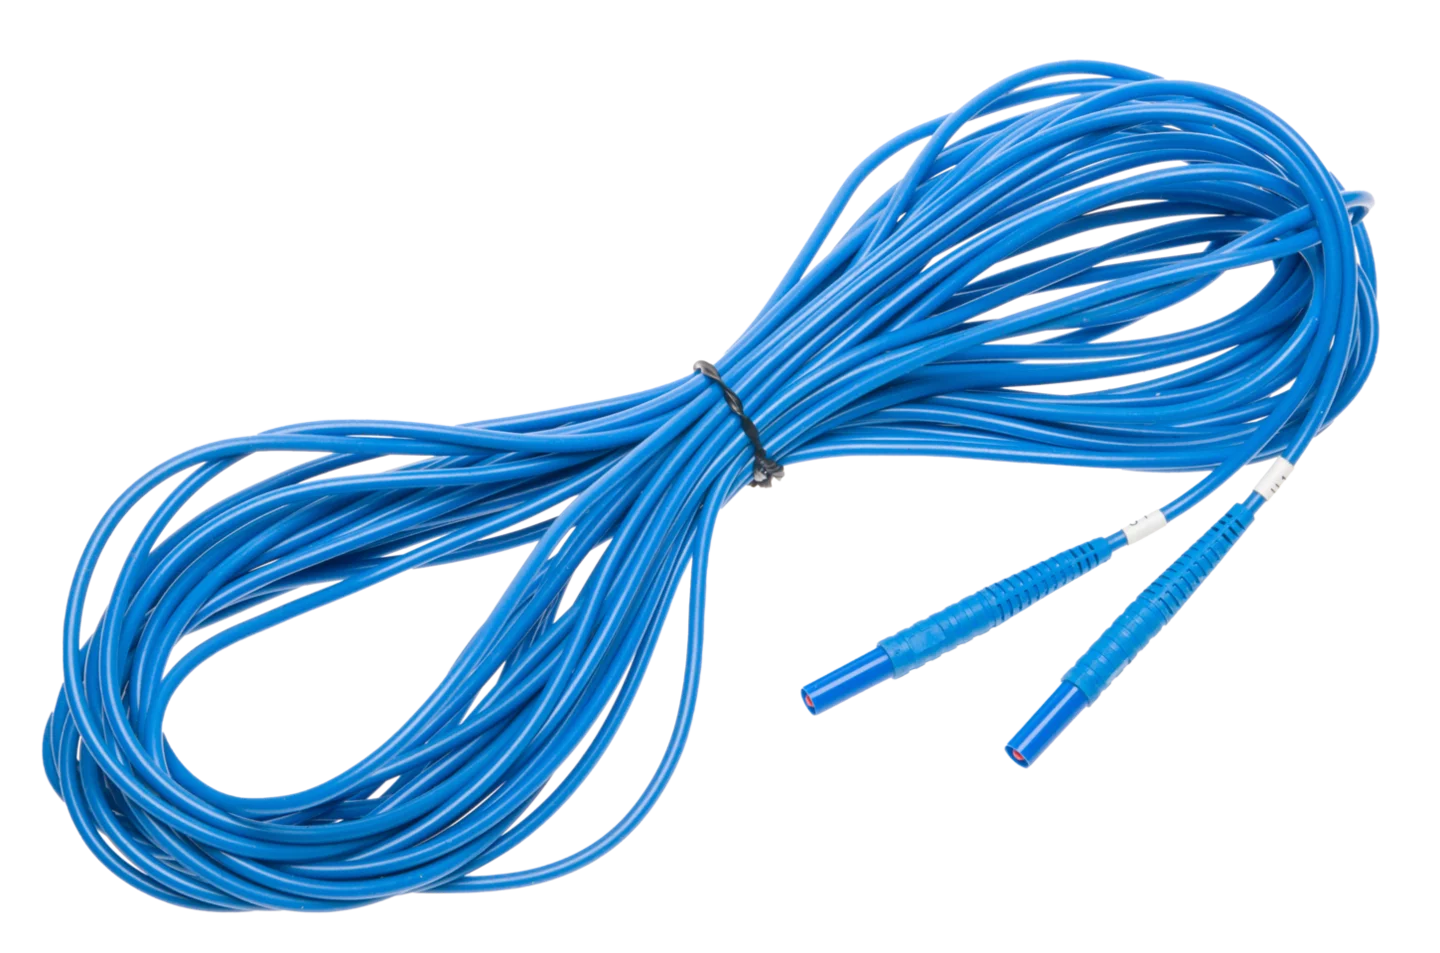 Test lead 15 m 1 kV (banana plugs) U2 blue